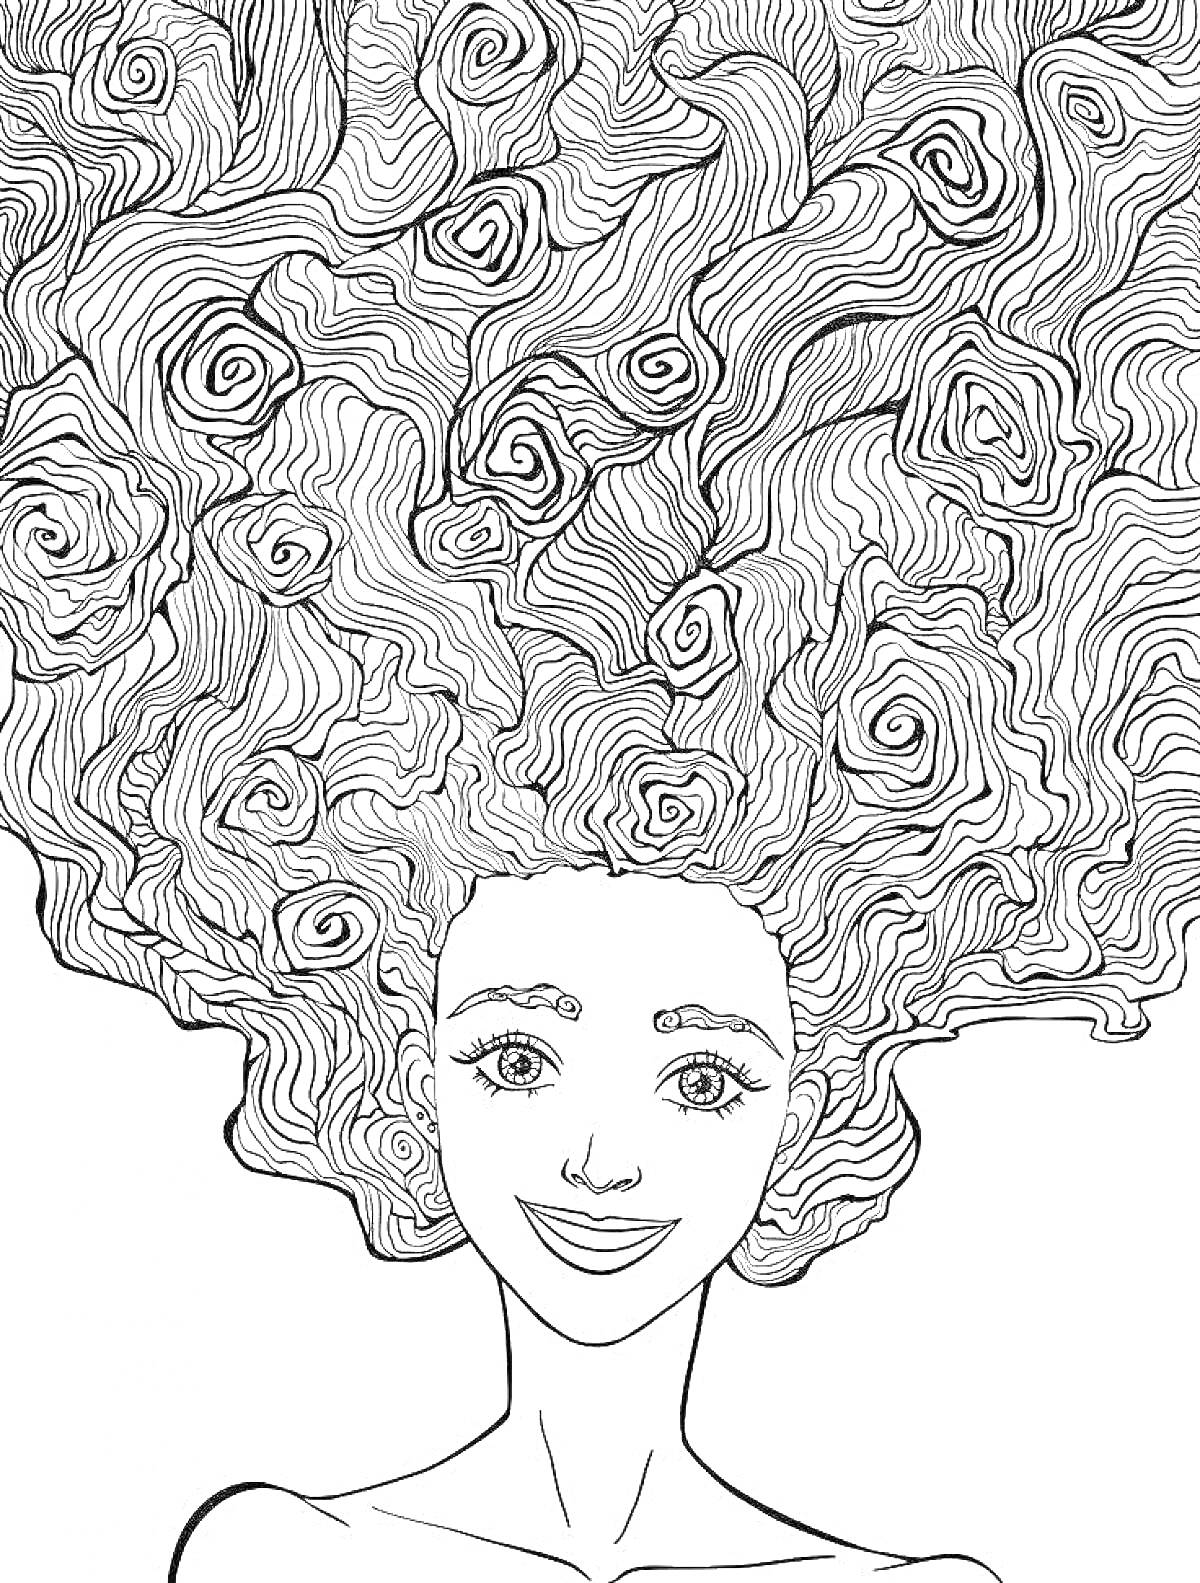 Девушка с длинными вьющимися волосами, которые заполняют верхнюю часть изображения, в антистресс стиле